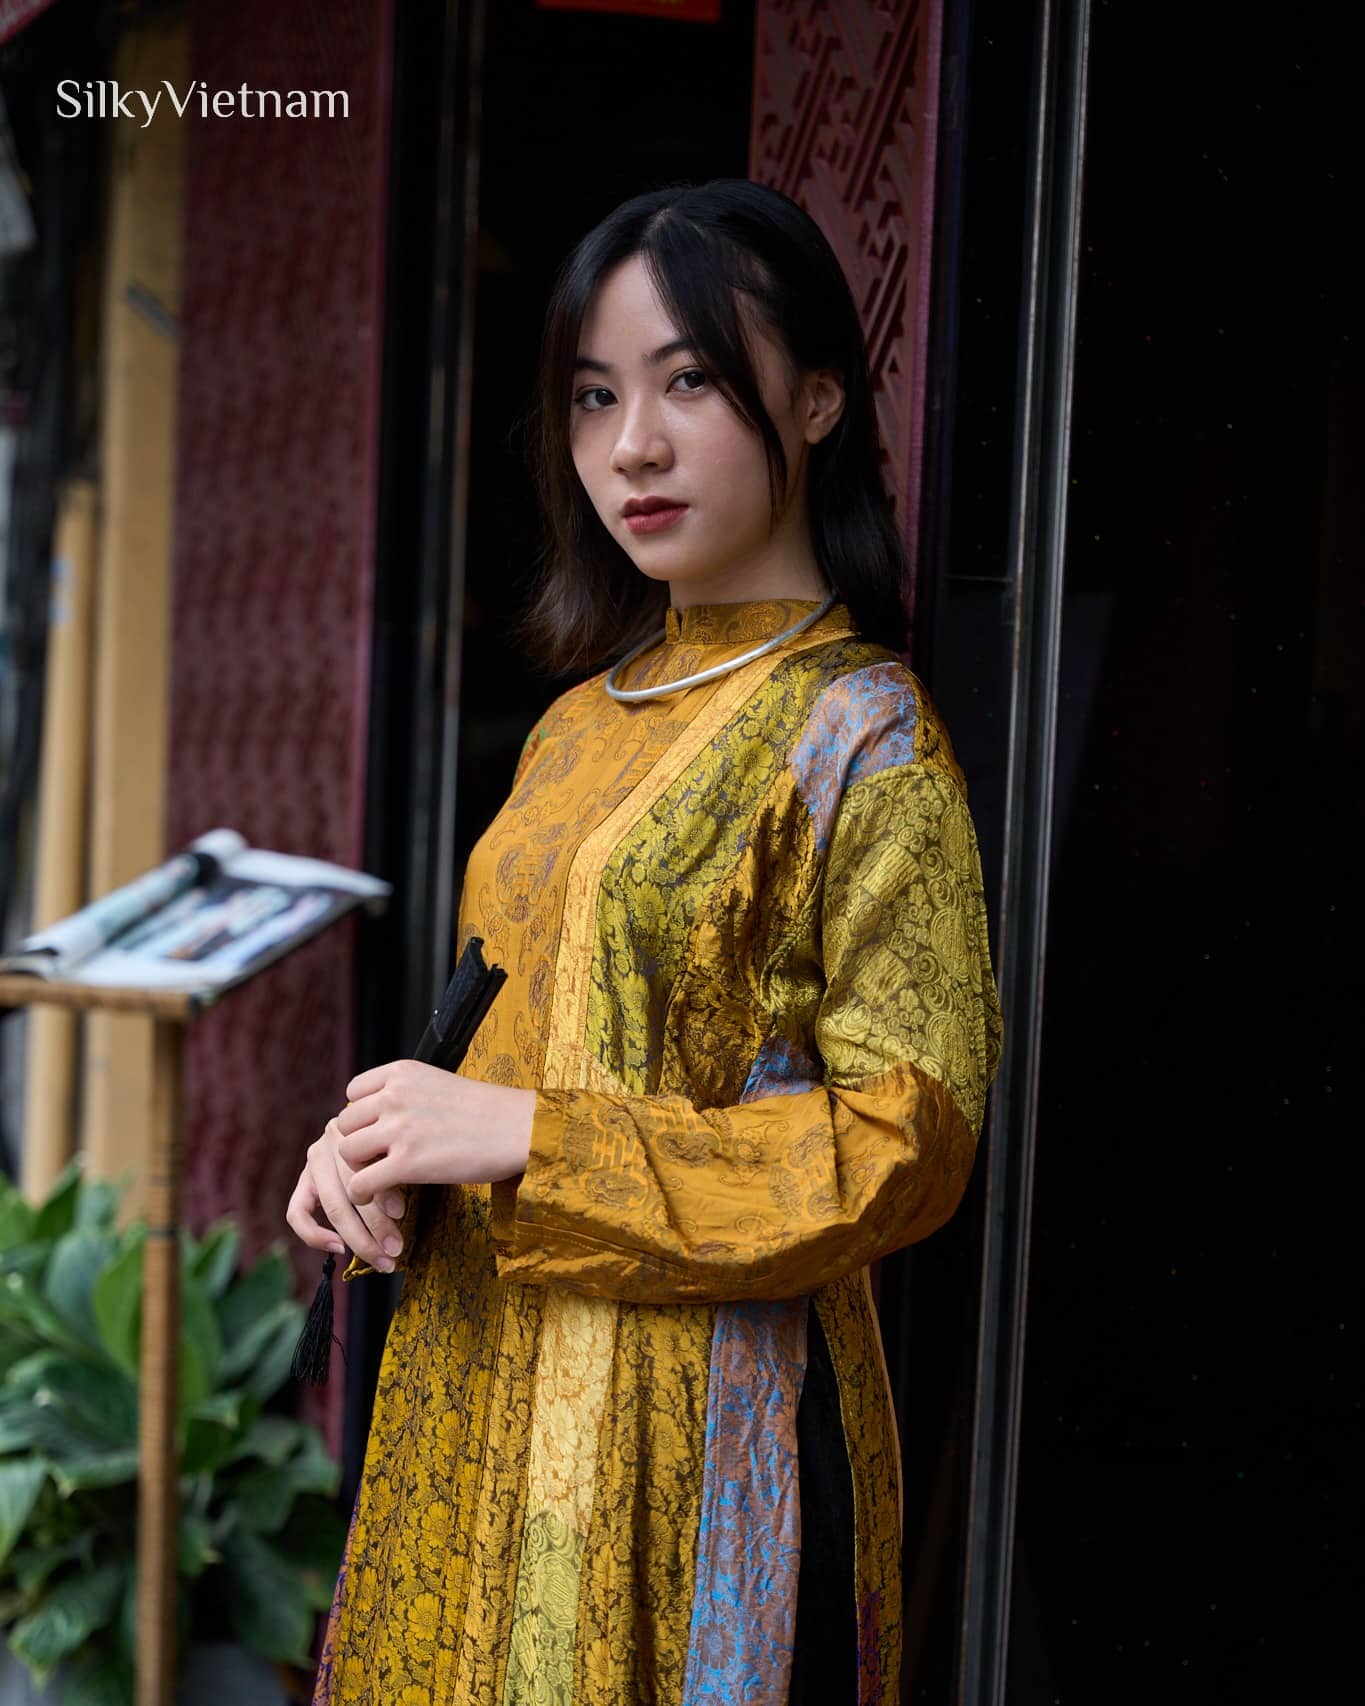 Áo dài truyền thống với họa tiết độc đáo được thể hiện trong Hà Nội trong tôi: Đình Cổ Vũ